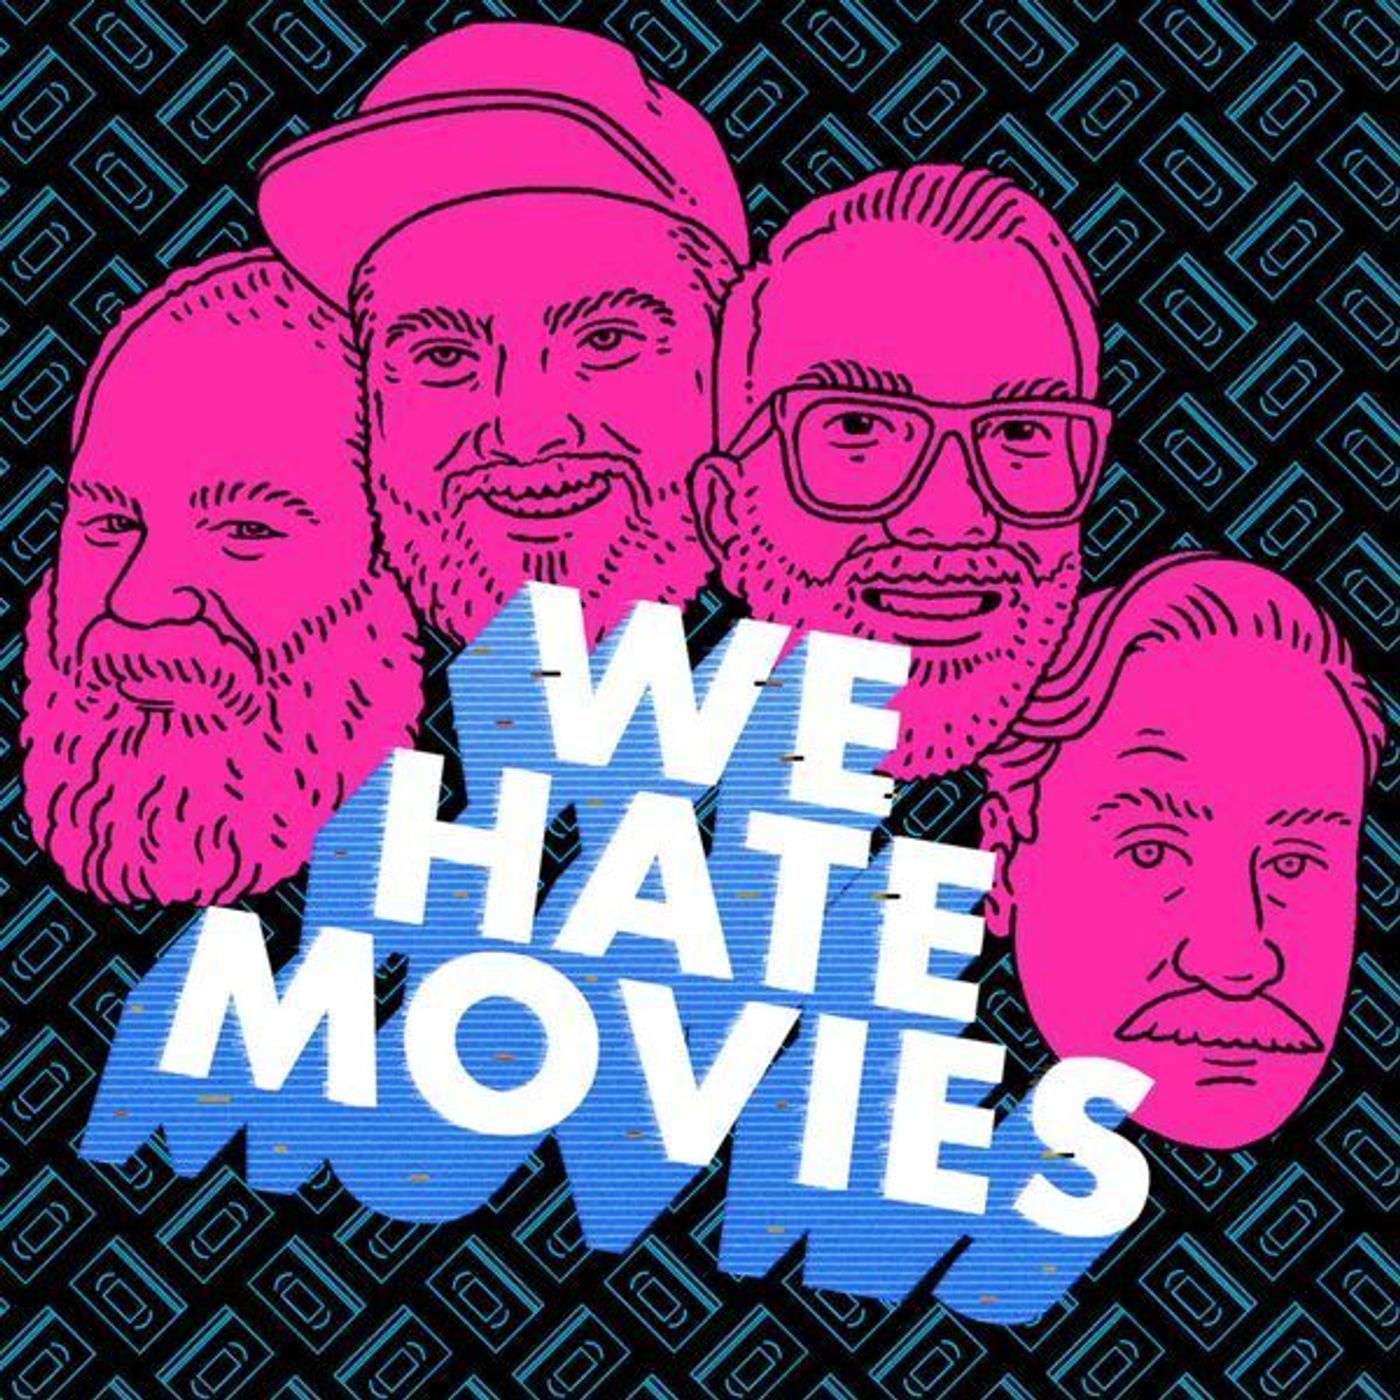 We Hate Movies